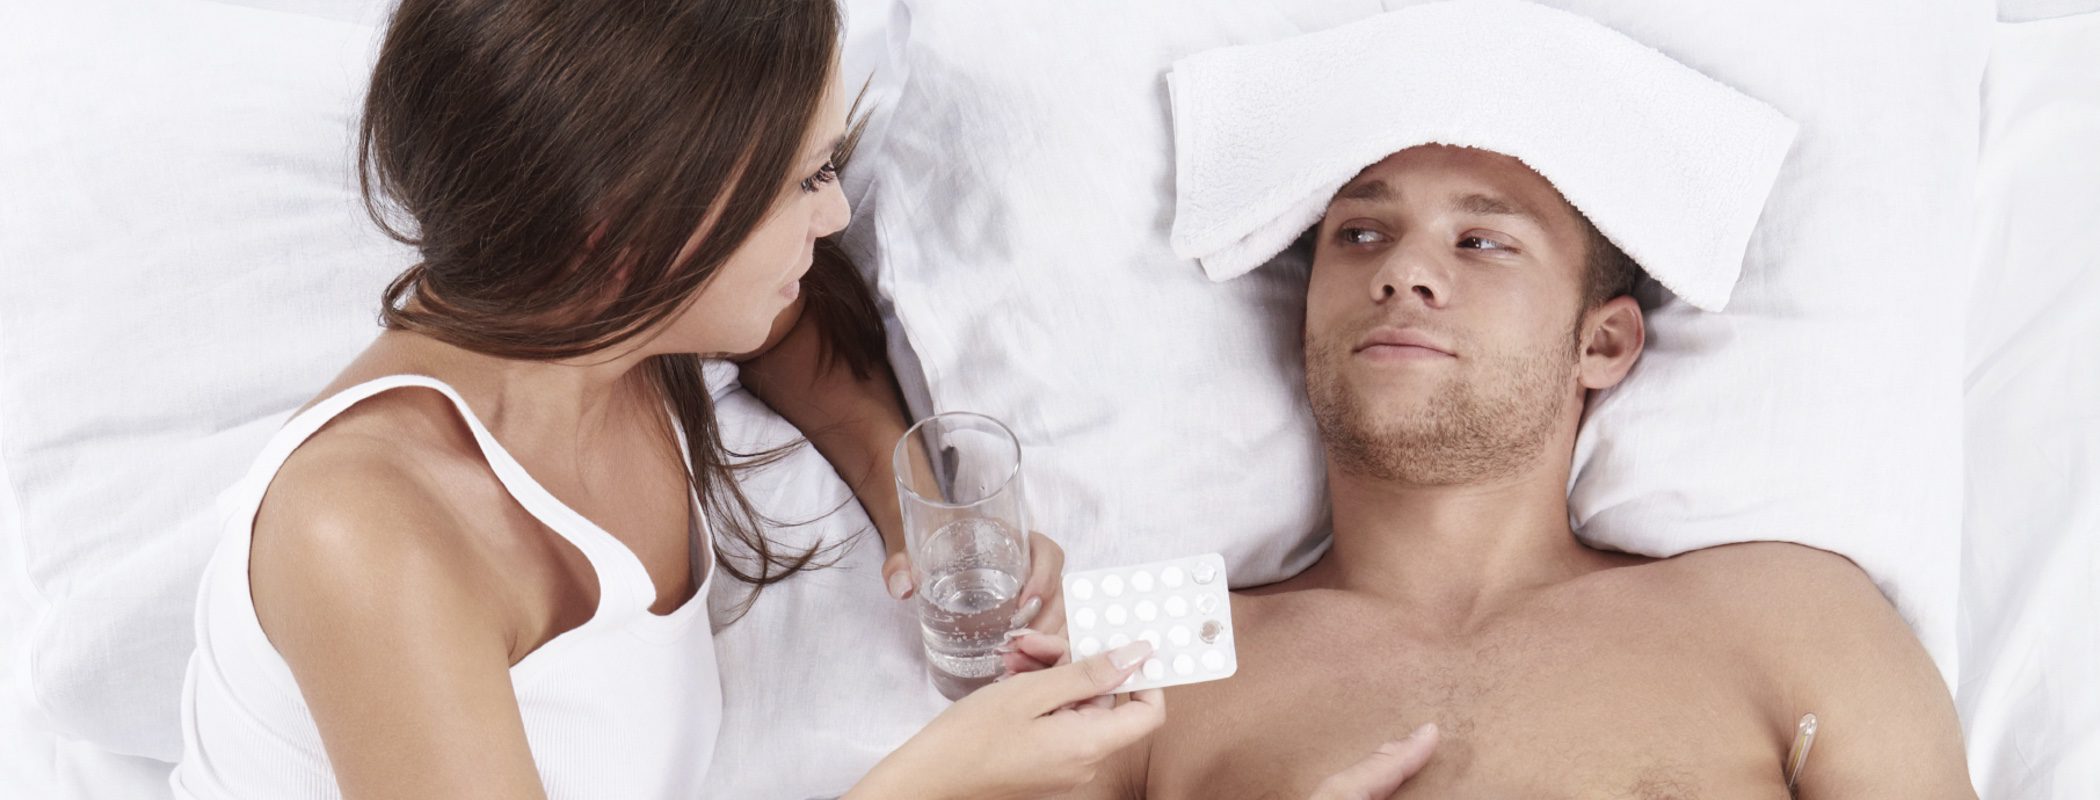 ¿Se debe tener sexo cuando estamos enfermos?